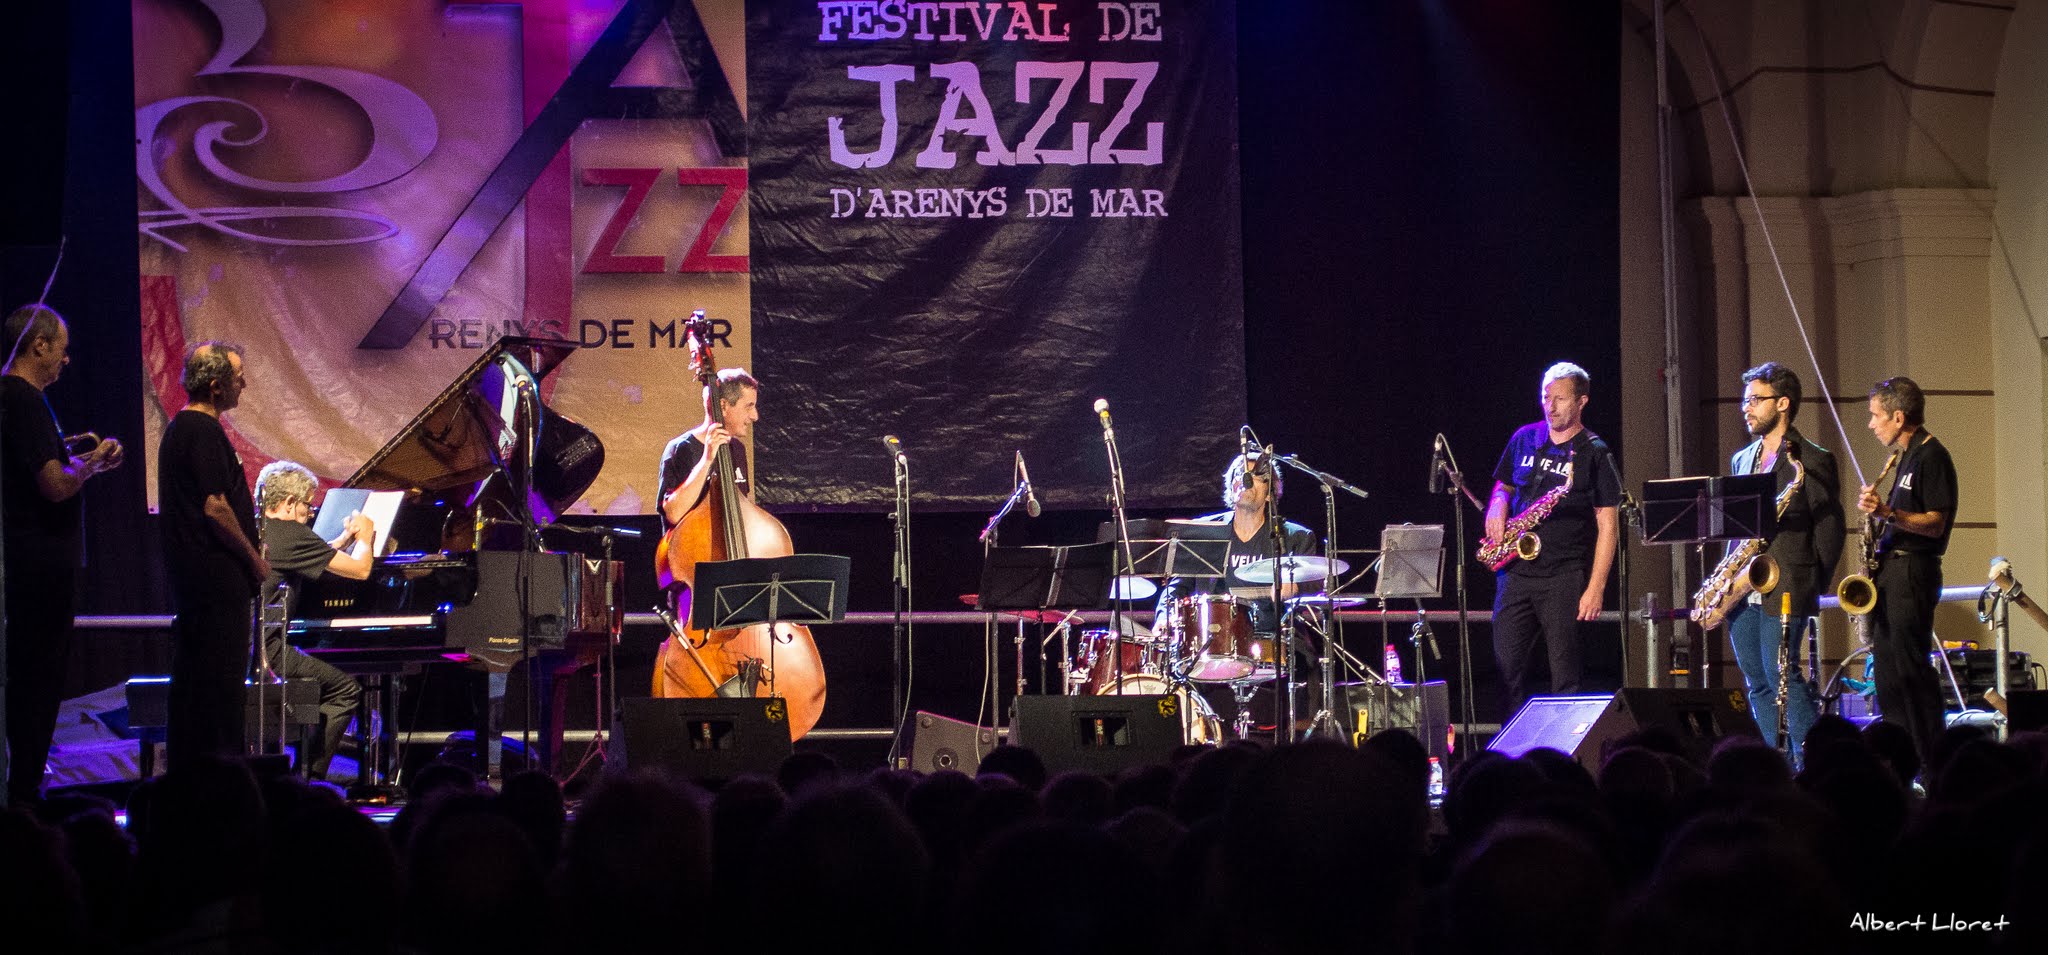 Imatges del 25 Festival de Jazz d'Arenys de Mar - 2016 - Foto 69437544